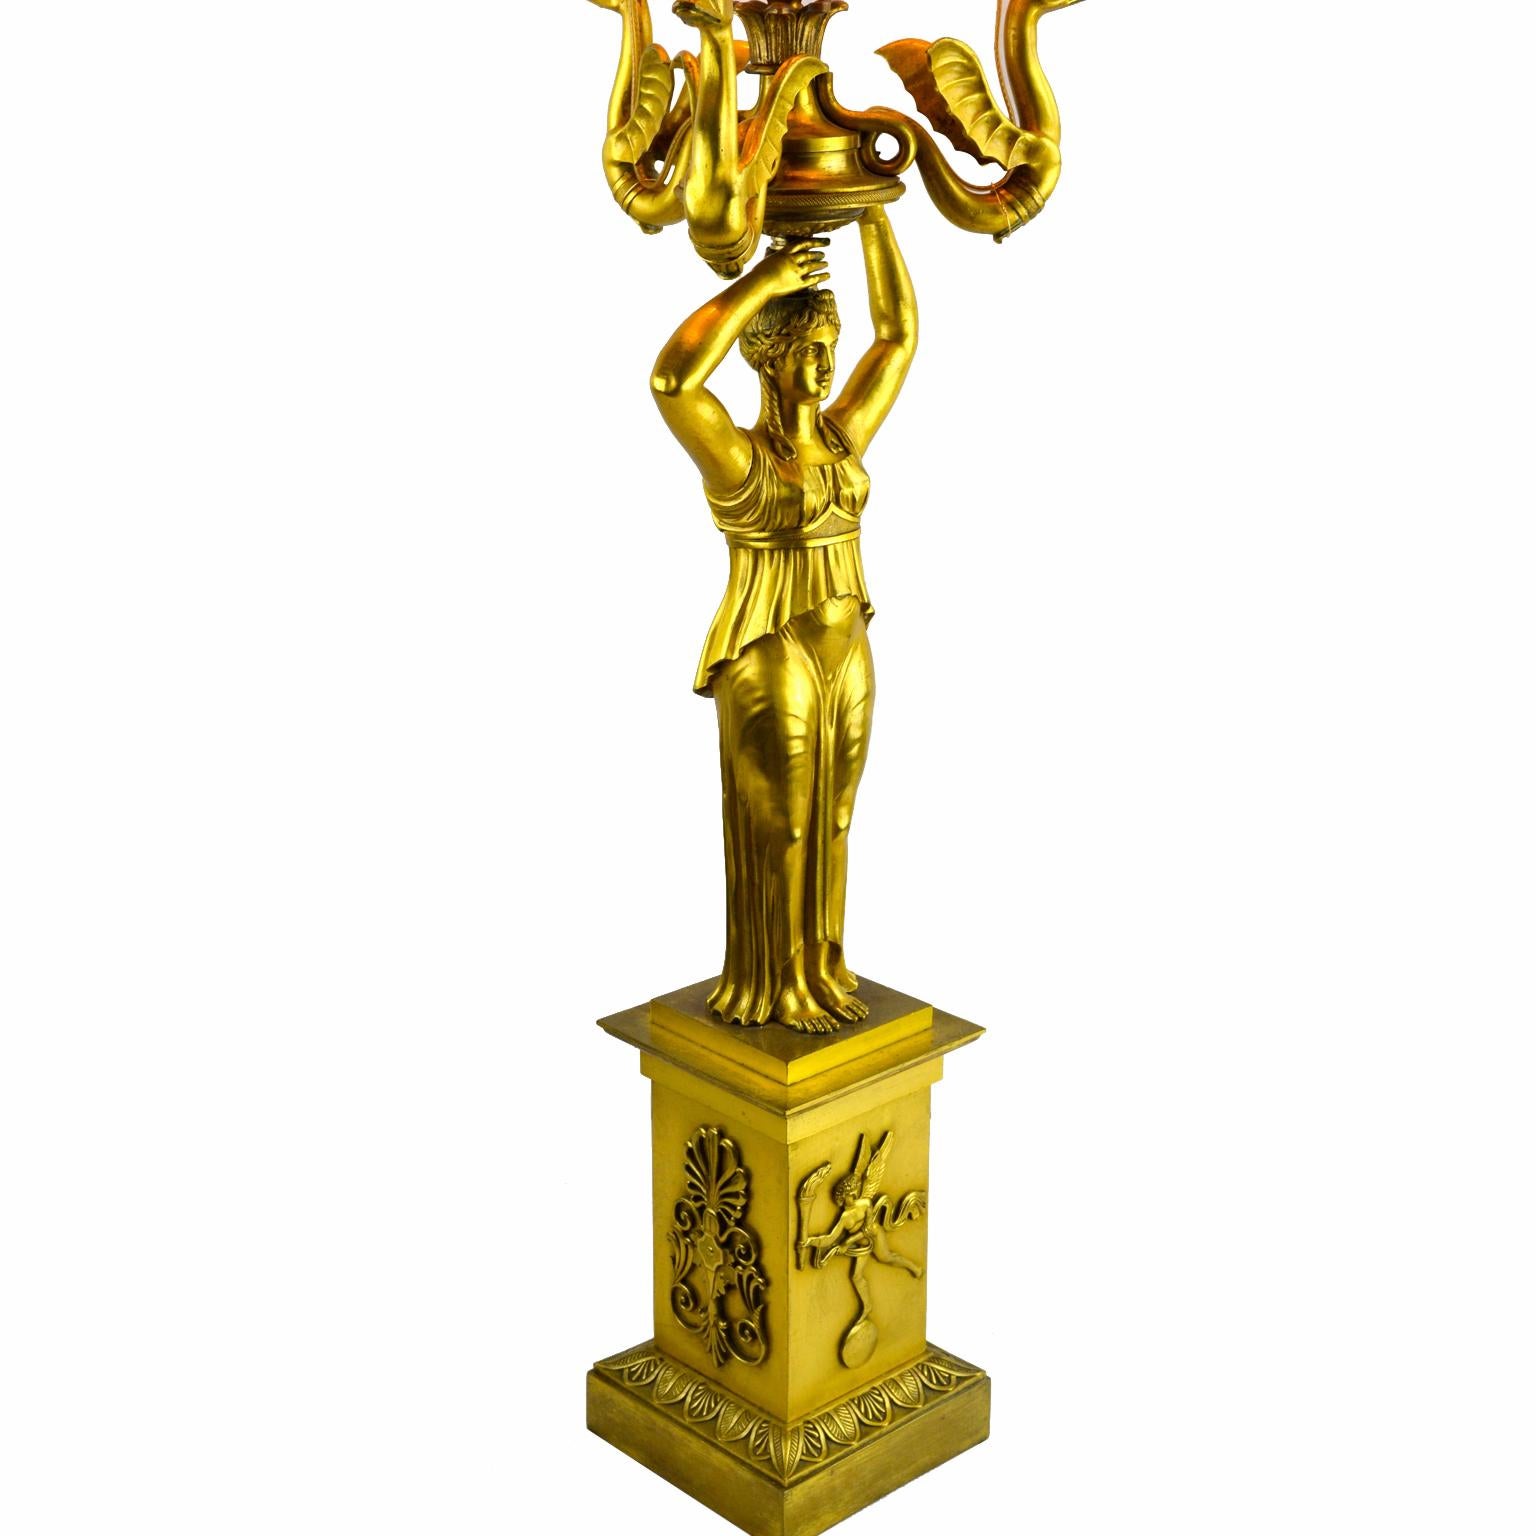 Ein fein gegossener und vergoldeter Kandelaber im Stil des russischen Kaiserreichs, der in eine Lampe umgewandelt wurde; er zeigt eine klassische Jungfrau, die drei geflügelte Seepferdchen in die Höhe hält, die in Kerzentüllen um eine zentrale